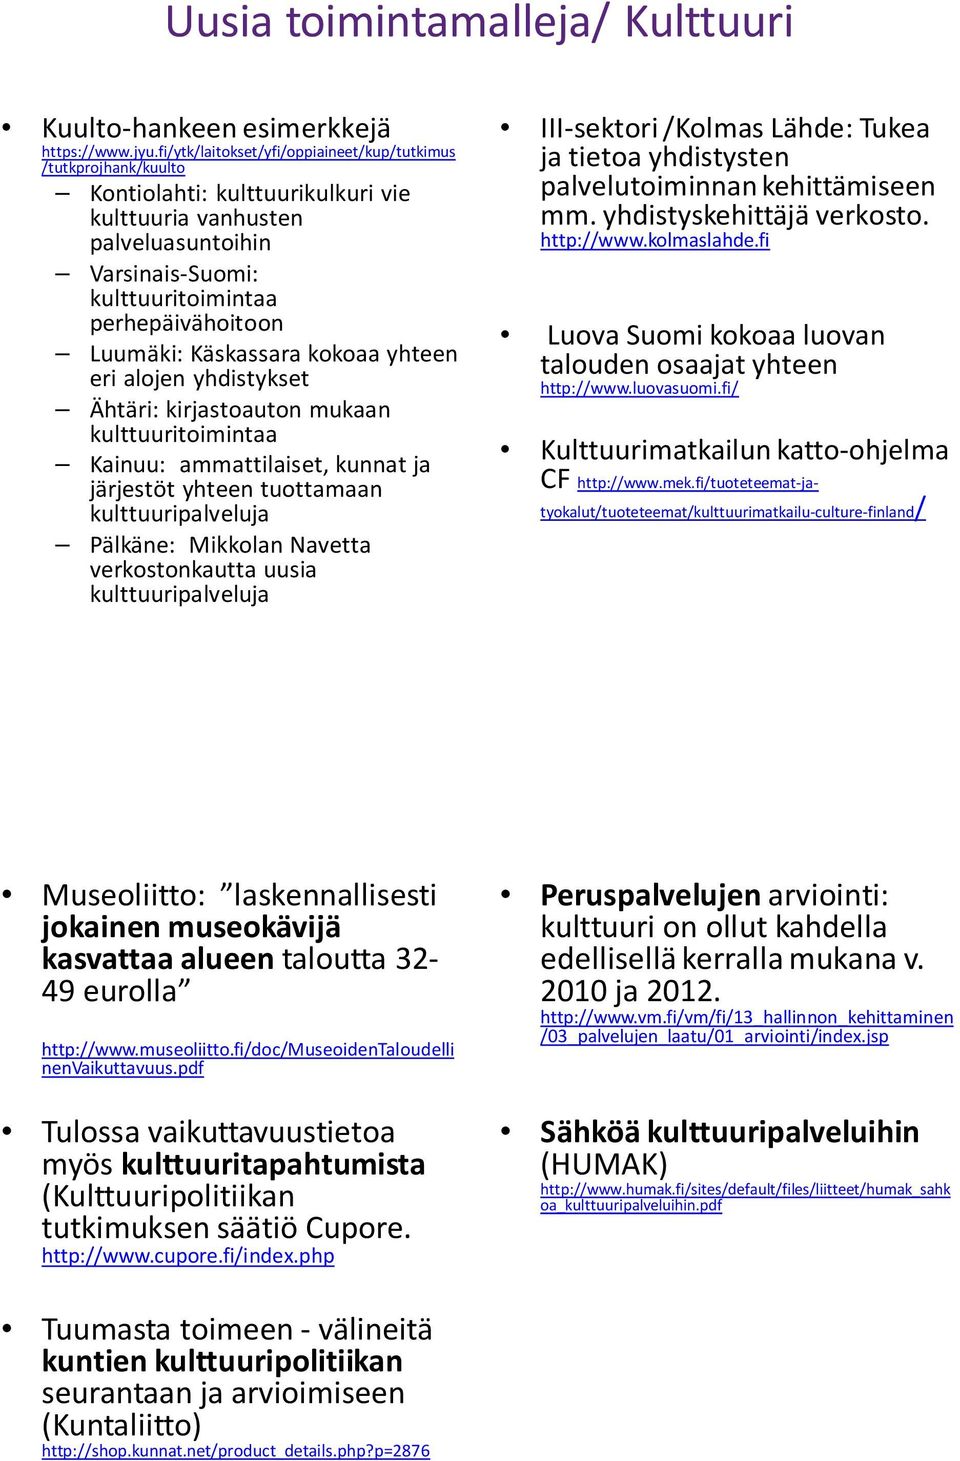 Luumäki: Käskassara kokoaa yhteen eri alojen yhdistykset Ähtäri: kirjastoauton mukaan kulttuuritoimintaa Kainuu: ammattilaiset, kunnat ja järjestöt yhteen tuottamaan kulttuuripalveluja Pälkäne: